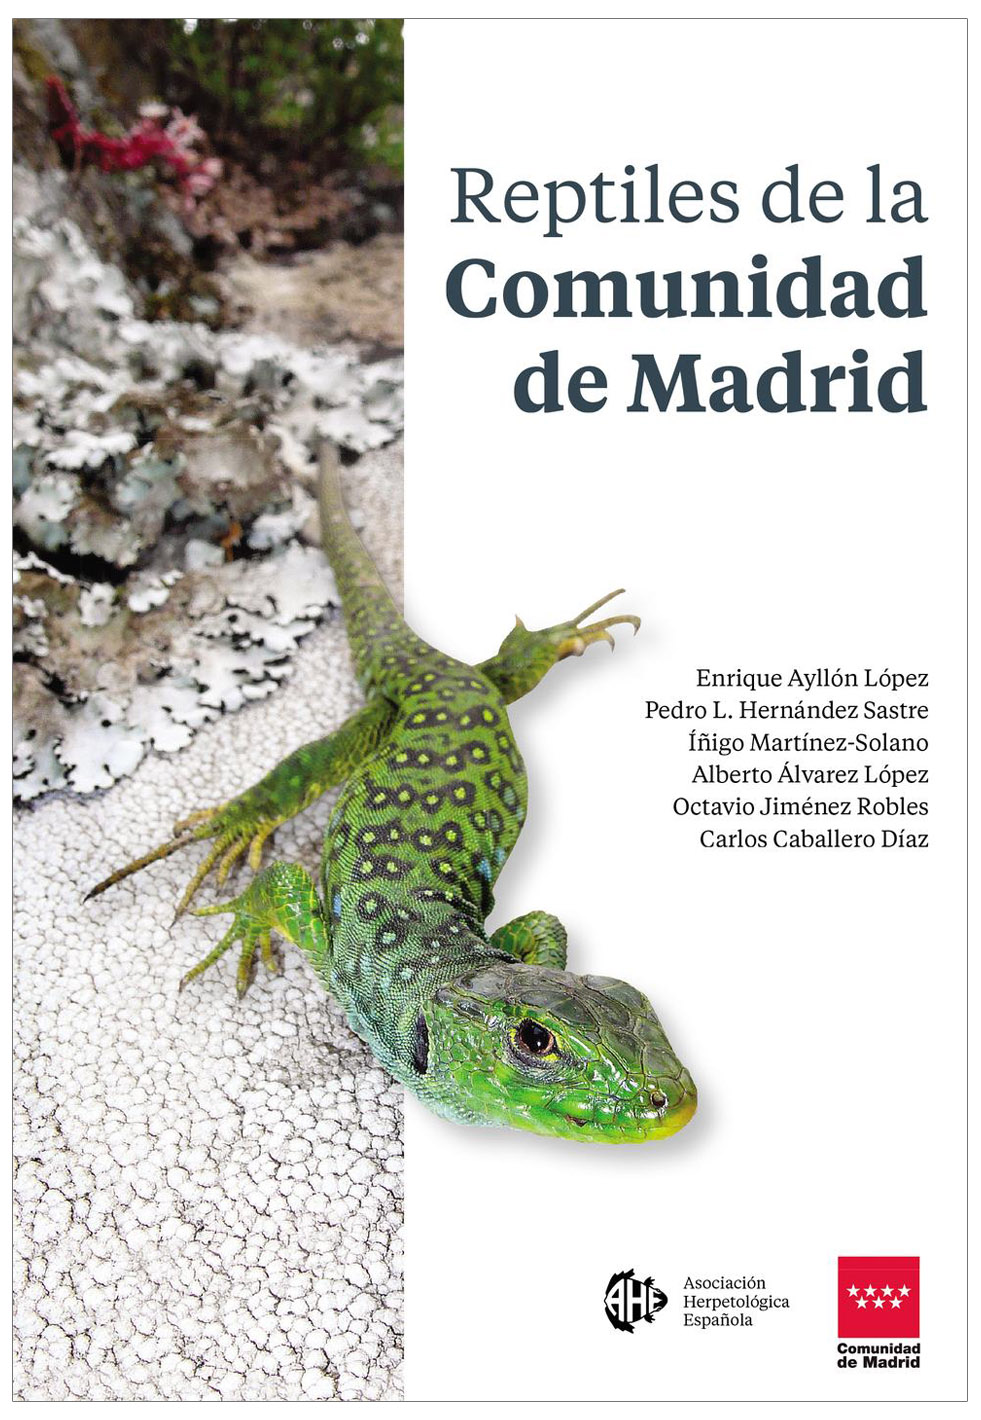 Reptiles de la Comunidad de Madrid